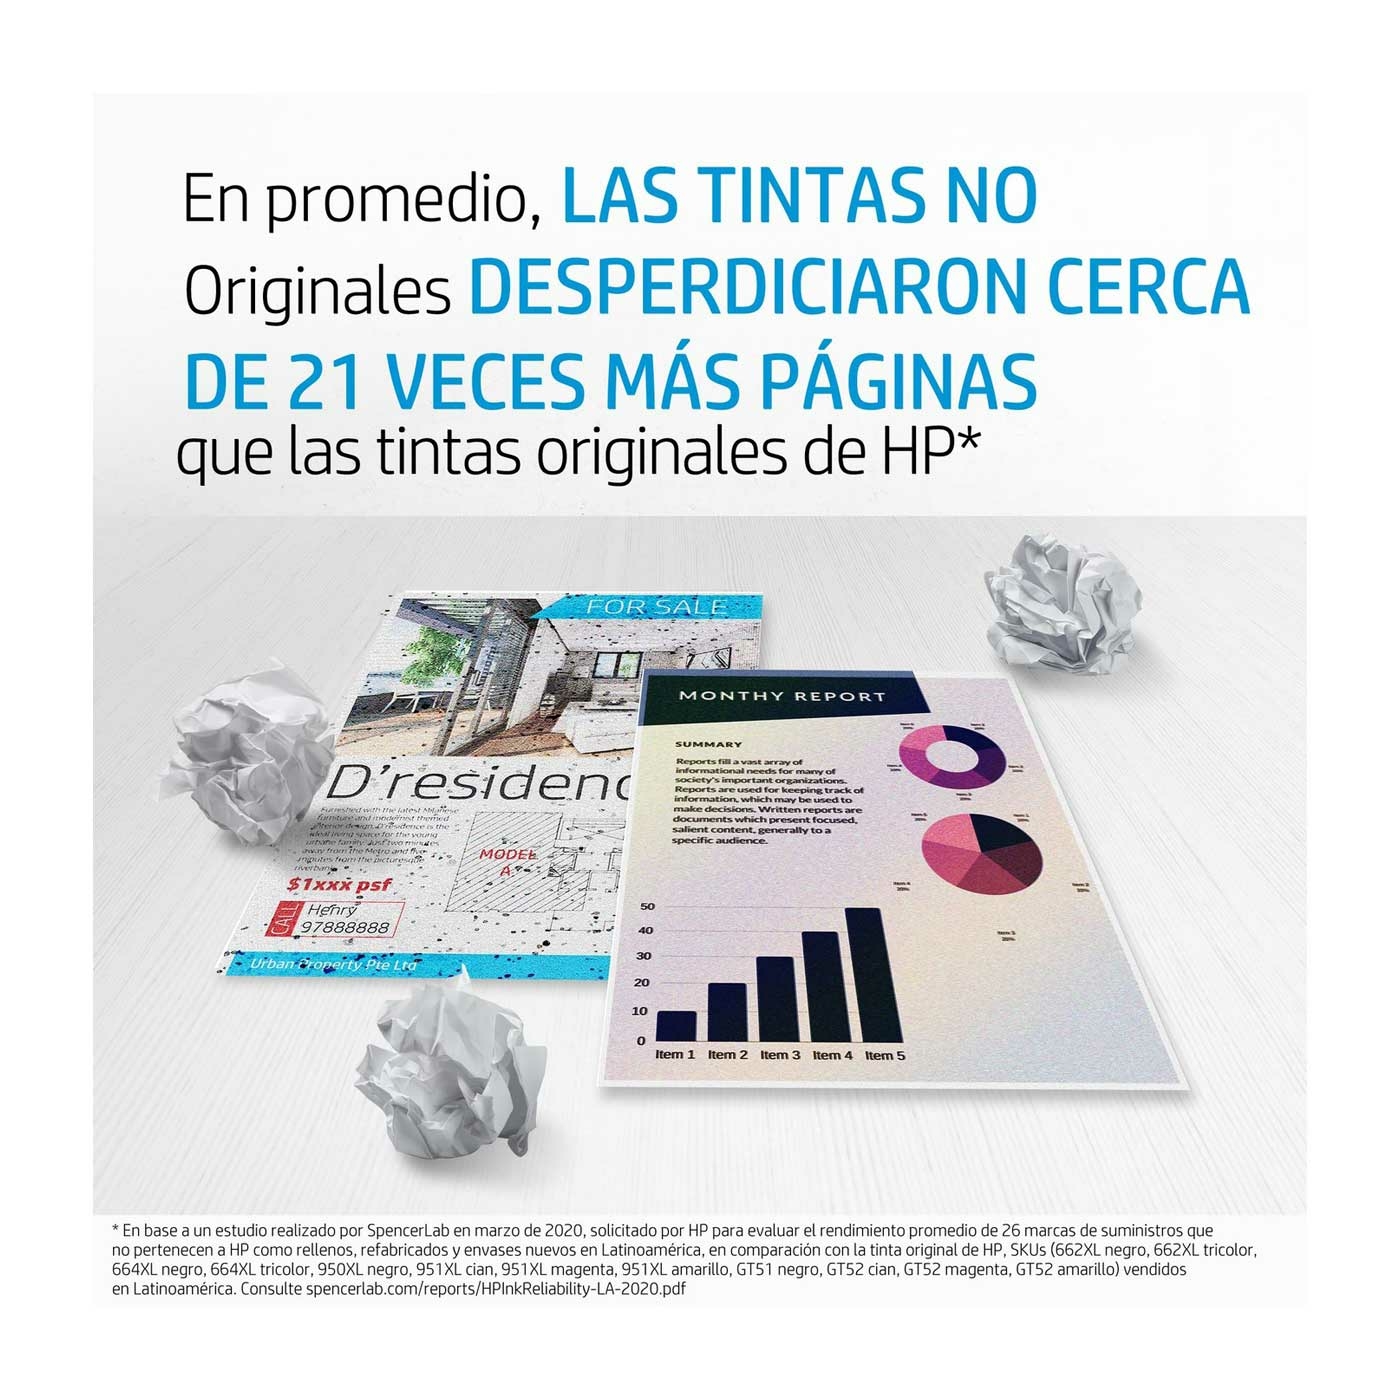 Cartucho de Tinta HP 954XL Amarillo